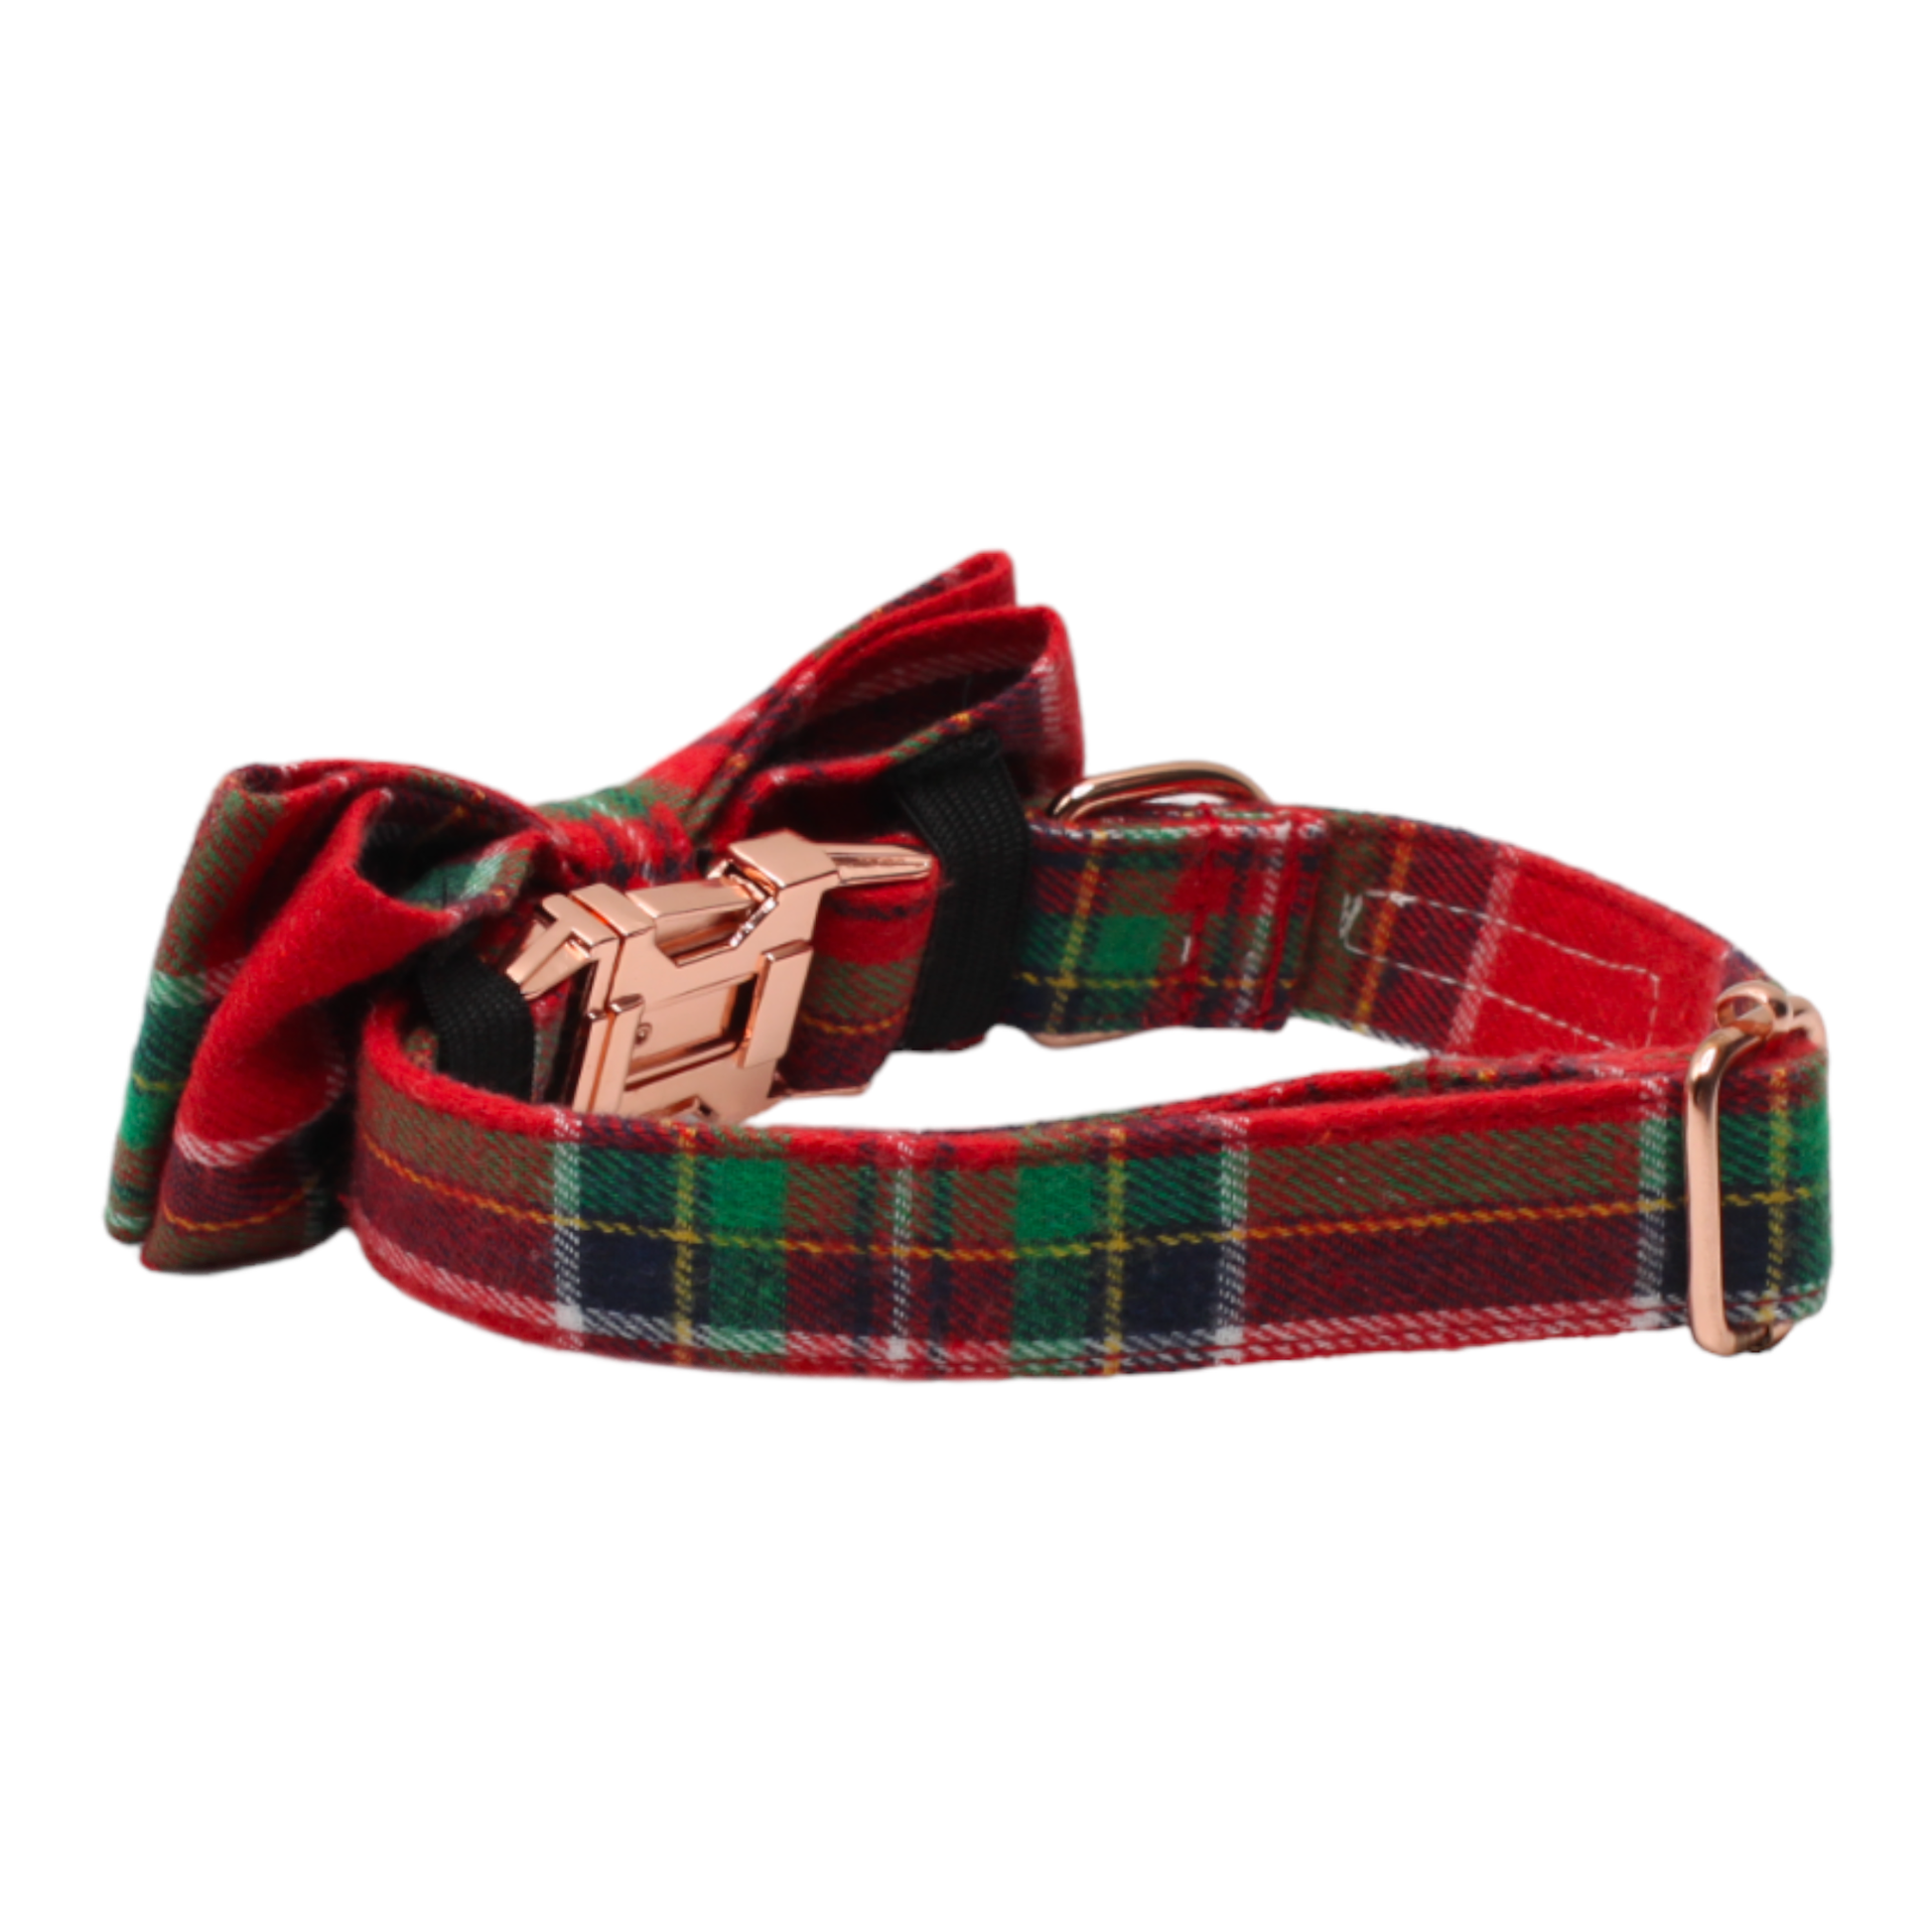 collier chien noeud papillon boucle métal or rose tartan écossais rouge vert blanc twiggy